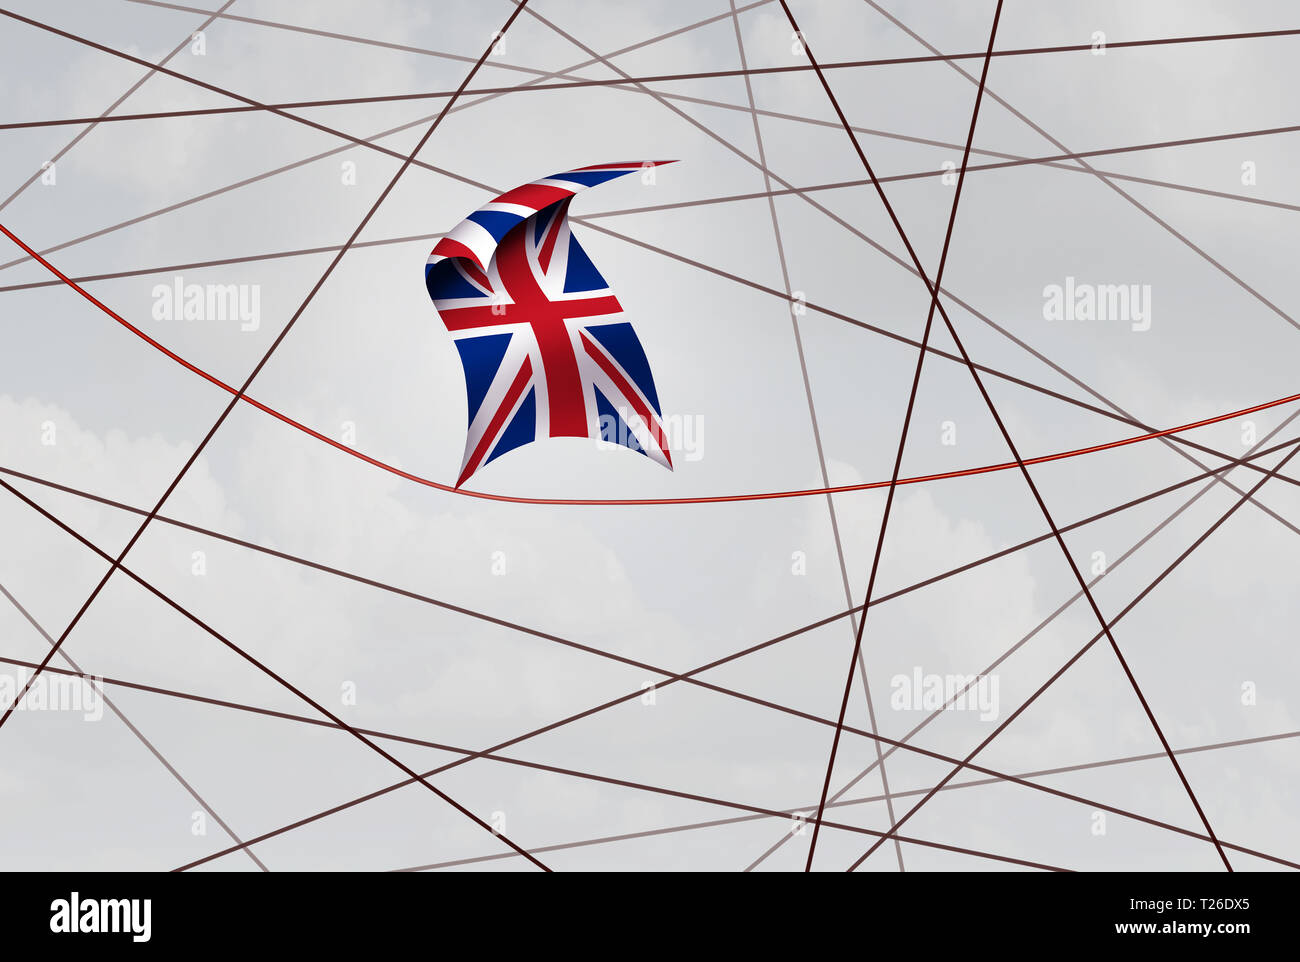 Royaume-uni brexit traiter l'incertitude politique et de la crise de la Grande-Bretagne et de l'élection référendaire ou voter lors d'une illustration 3D de style. Banque D'Images